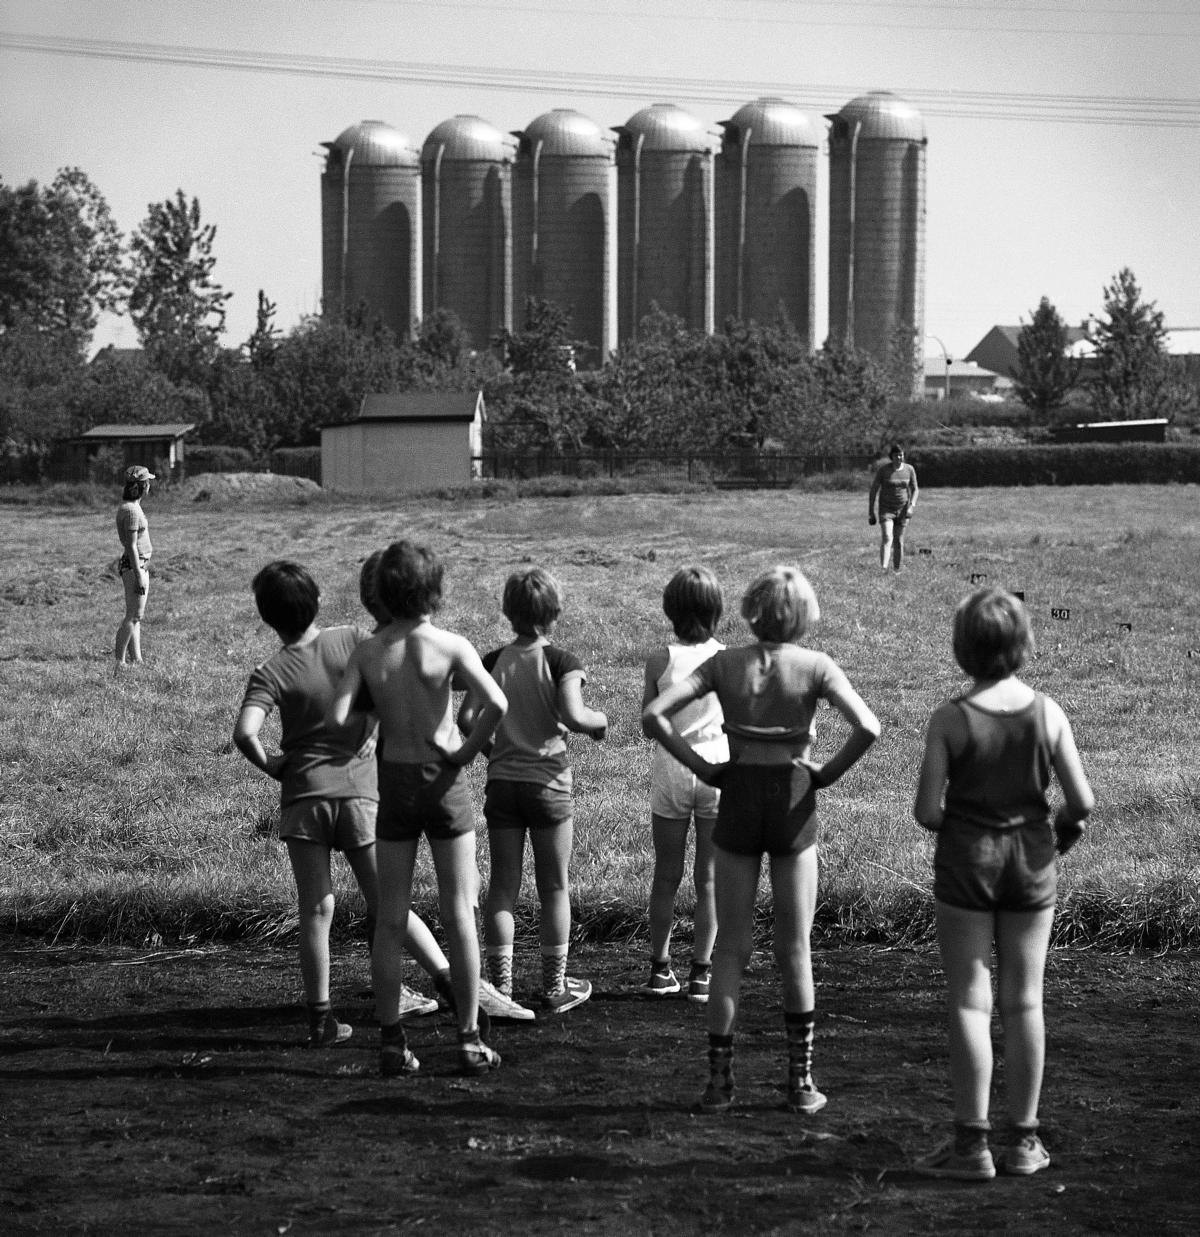 Schwarzweißfotografie einer sommerlichen Szene, in der mit dem Rücken zum Fotografen stehende, in Sportsachen gekleidete Kinder auf einer Wiese stehen und in Richtung zweier Erwachsener blicken, im Hintergrund stehen markant sechs Silos.